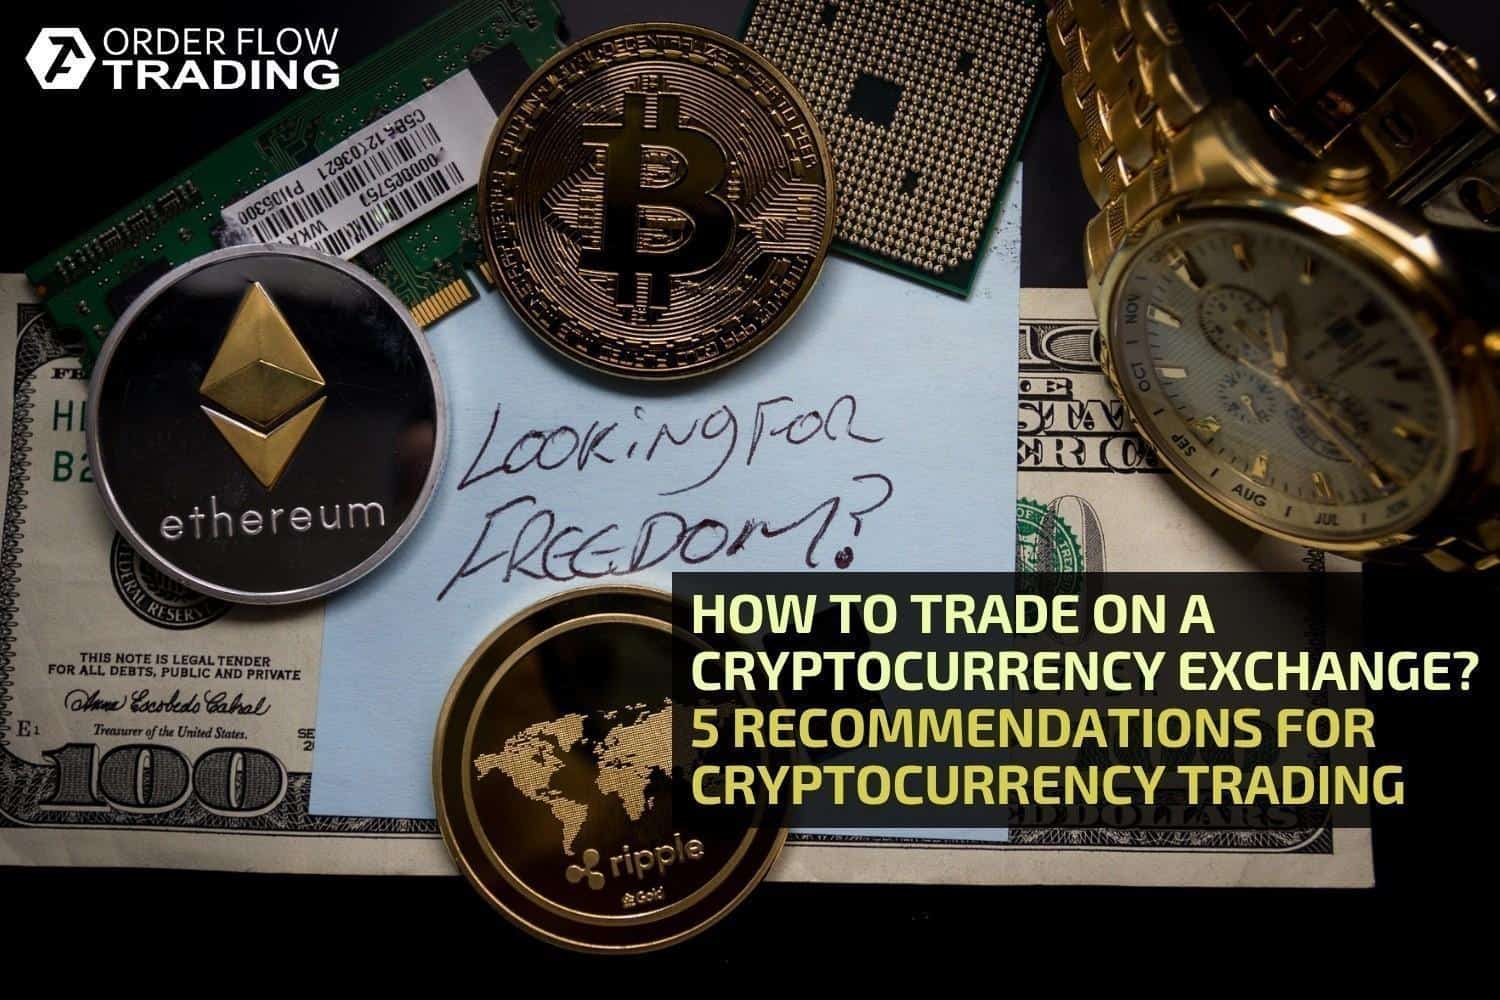 bitcoin midterm buy trade nuevas formas de ganar dinero con bitcoin 2021 opciones binarias reguladas mexico